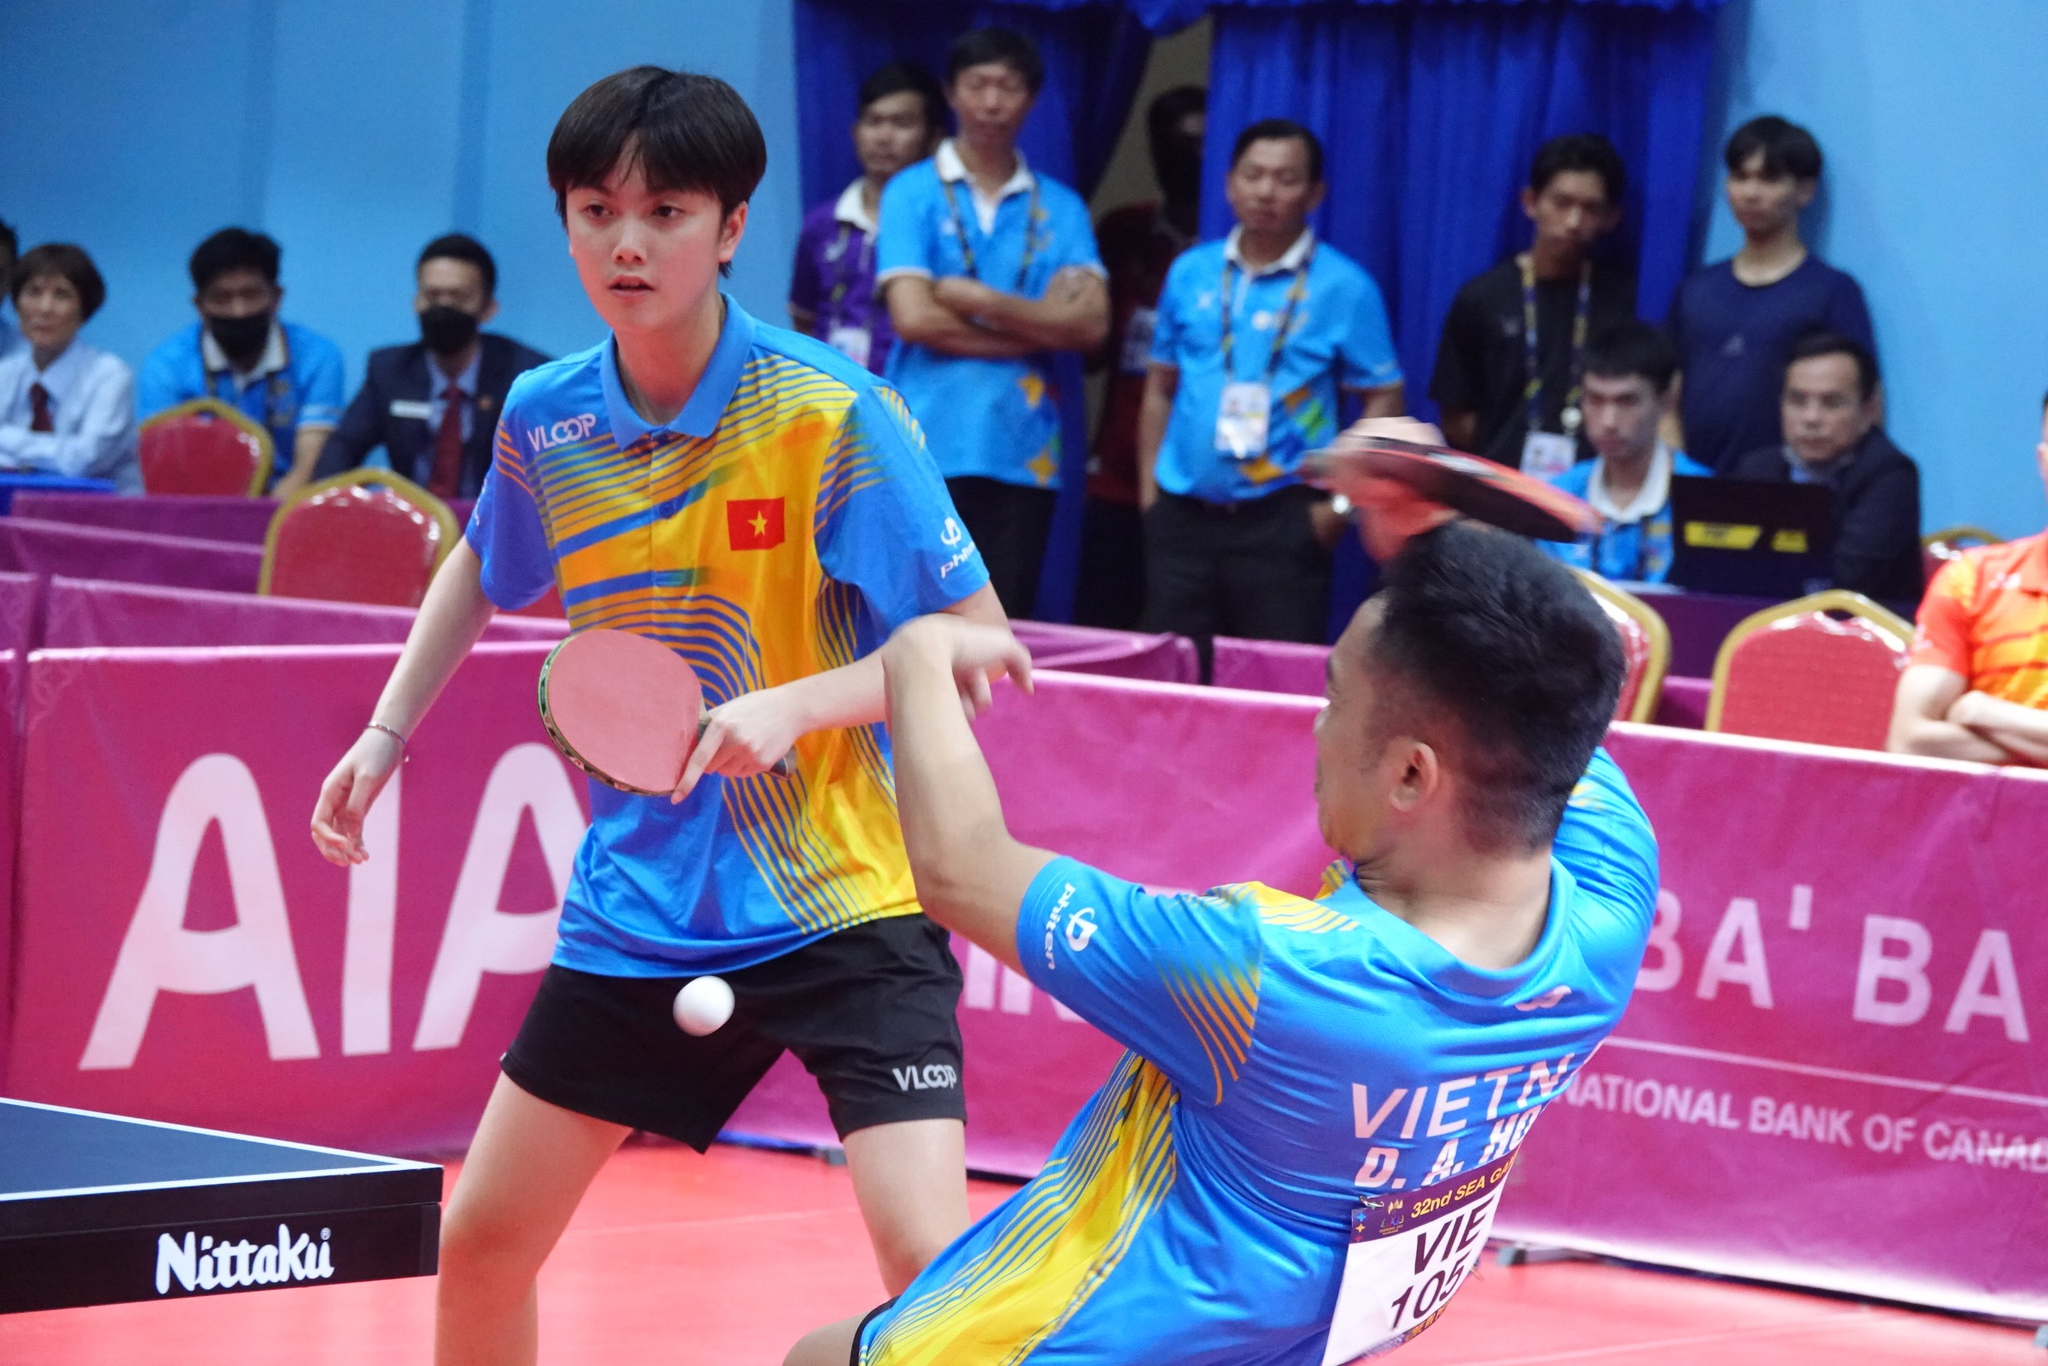 Đôi Đinh Anh Hoàng - Trần Mai Ngọc đang thi đấu với Zhe Yu Chew - Jian Zeng (Singapore) trong trận chung kết đôi nam nữ, bóng bàn. Tỉ số tạm thời là 2-1.